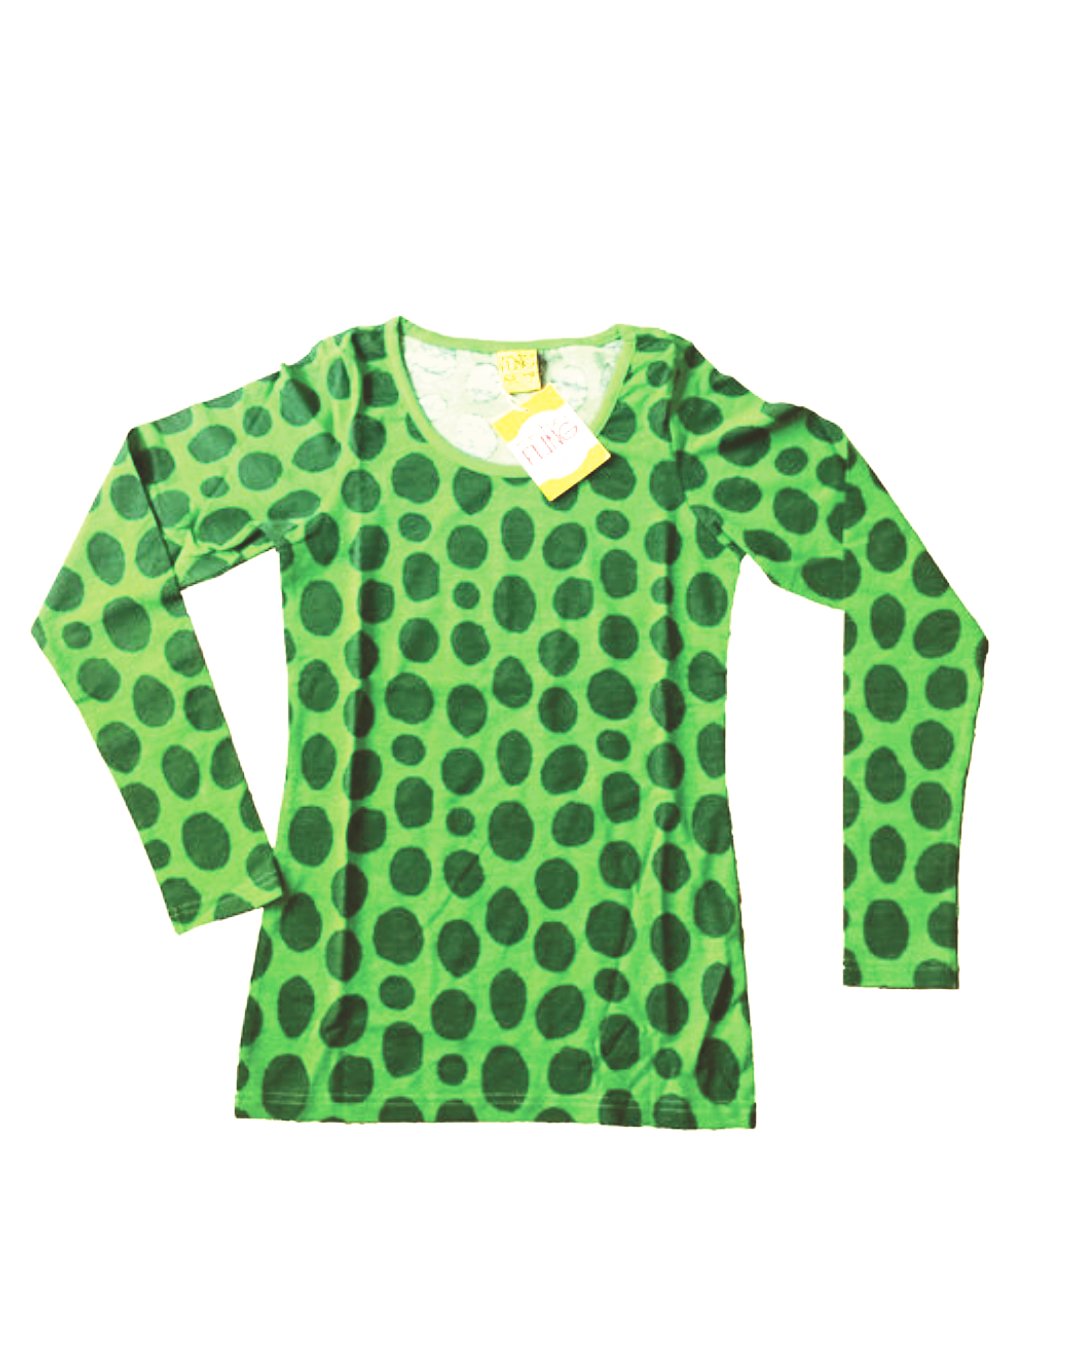 DamenShirt in grün mit grünen Tupfen von DUNS Sweden aus Biobaumwolle